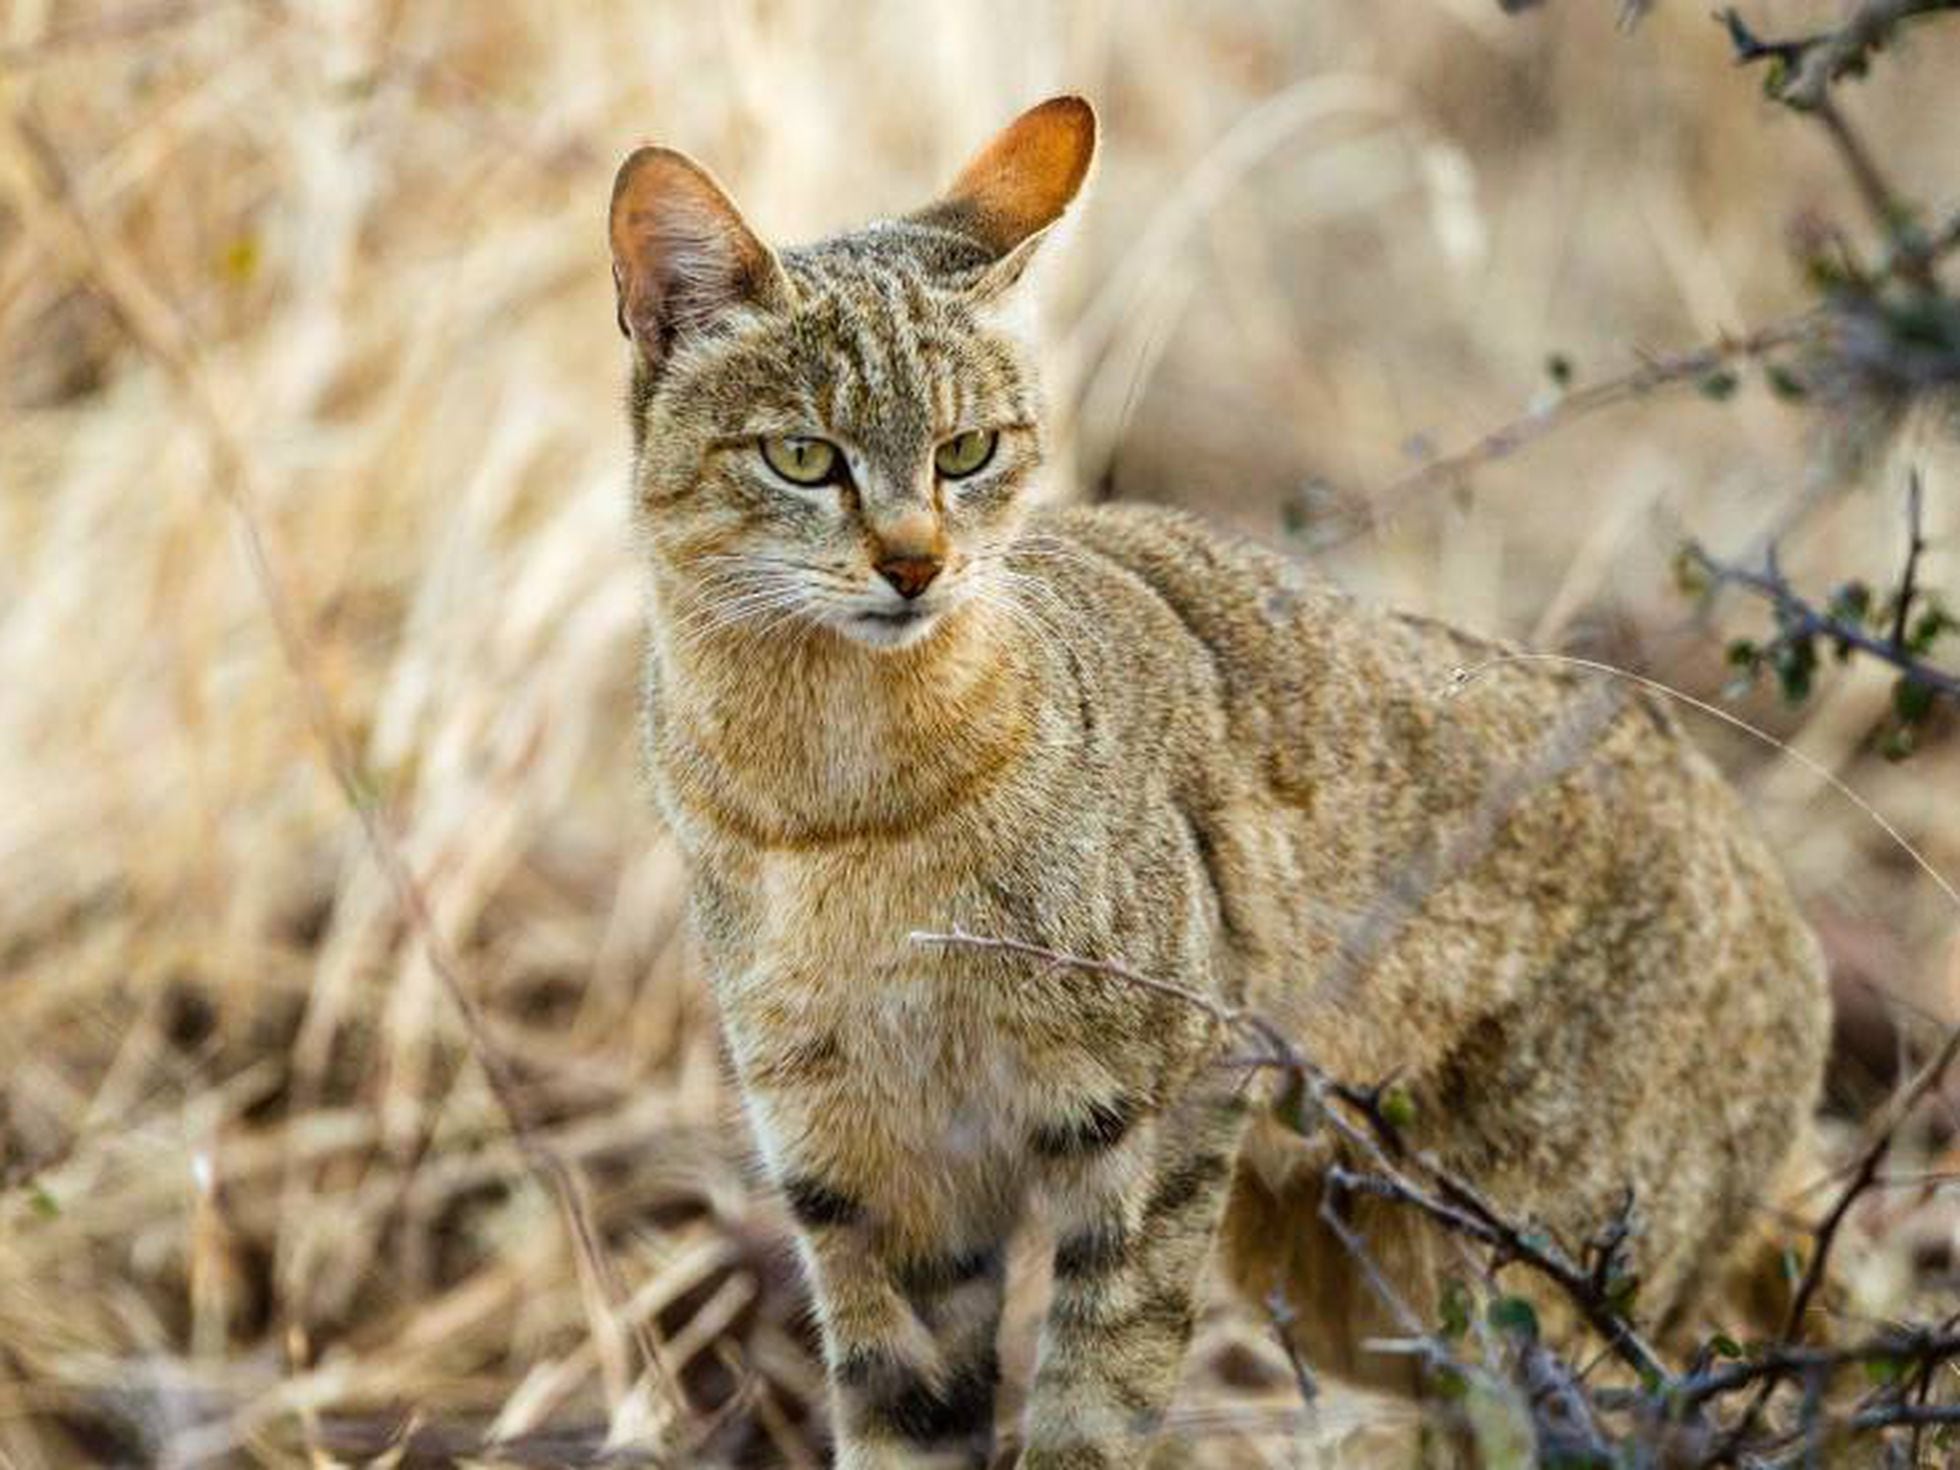 Gatos: Tu desciende del gato salvaje africano | Ciencia | EL PAÍS